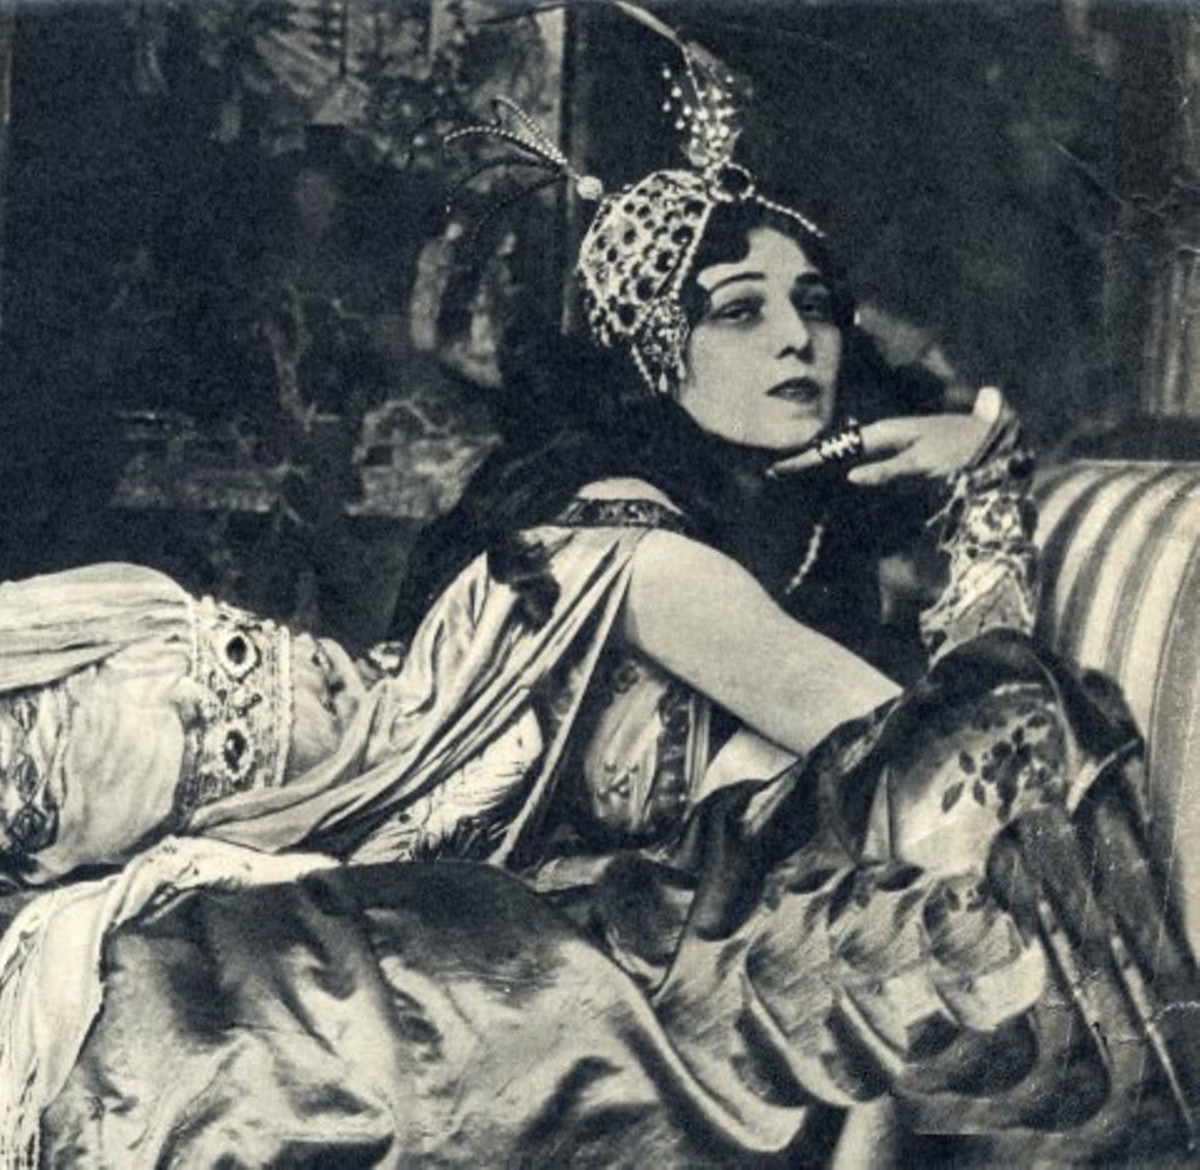 Прем'єра Болеро як балетного спектаклю відбулася в Парижі 20 листопада 1928 року